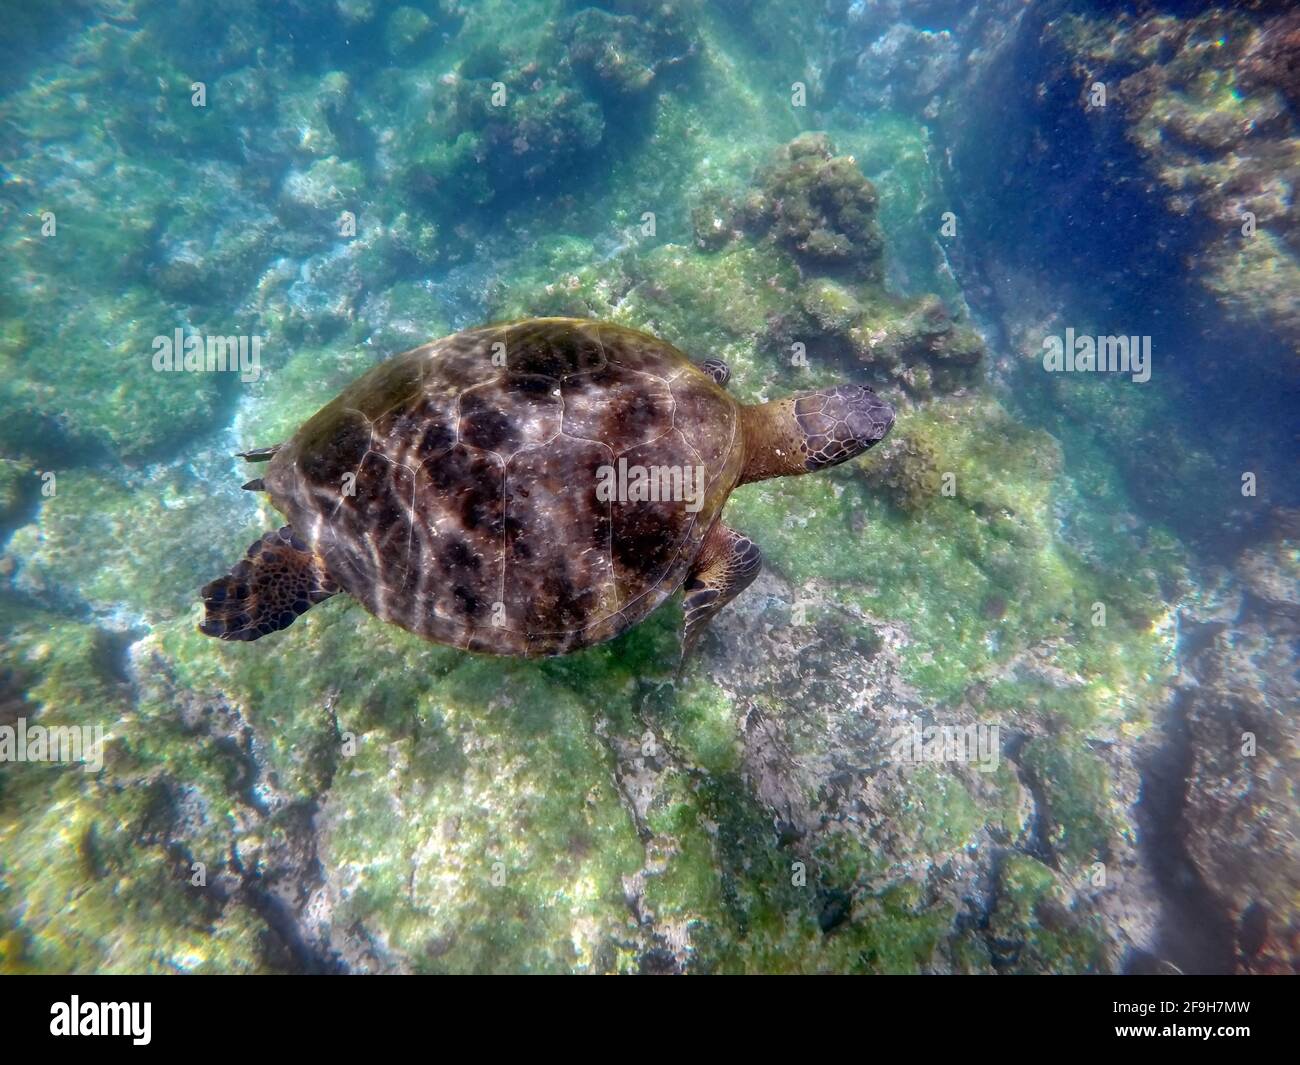 Galapagos green sea turtle swimming at Punta Espinoza, Fernandina Island, Galapagos, Ecuador Stock Photo